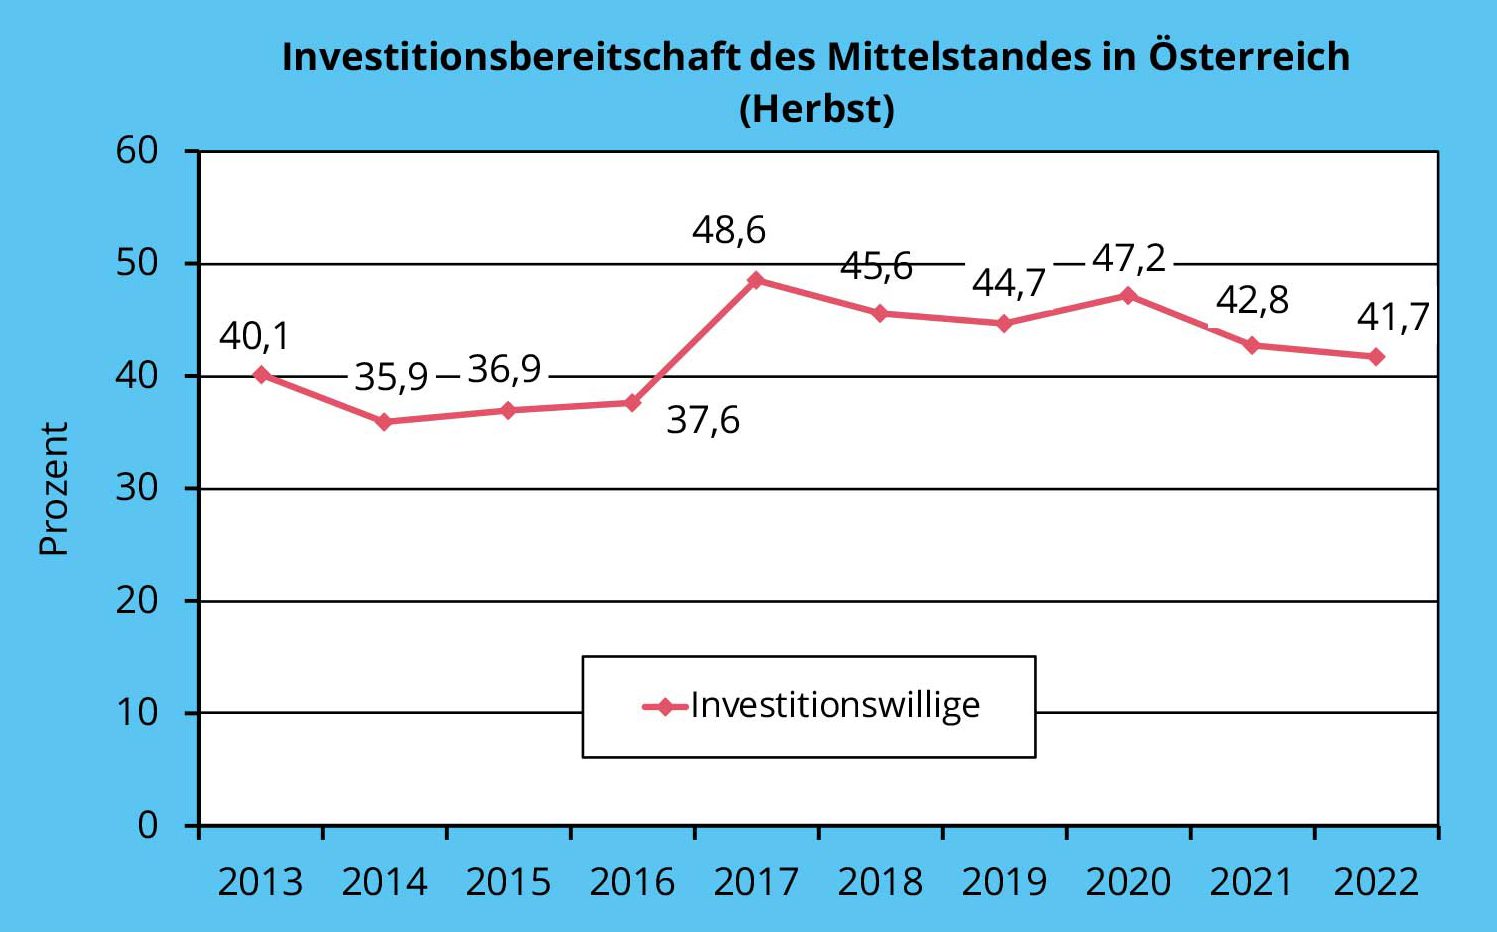 Aktuelle Wirtschaftslage der KMU in Österreich, Herbst 2022
